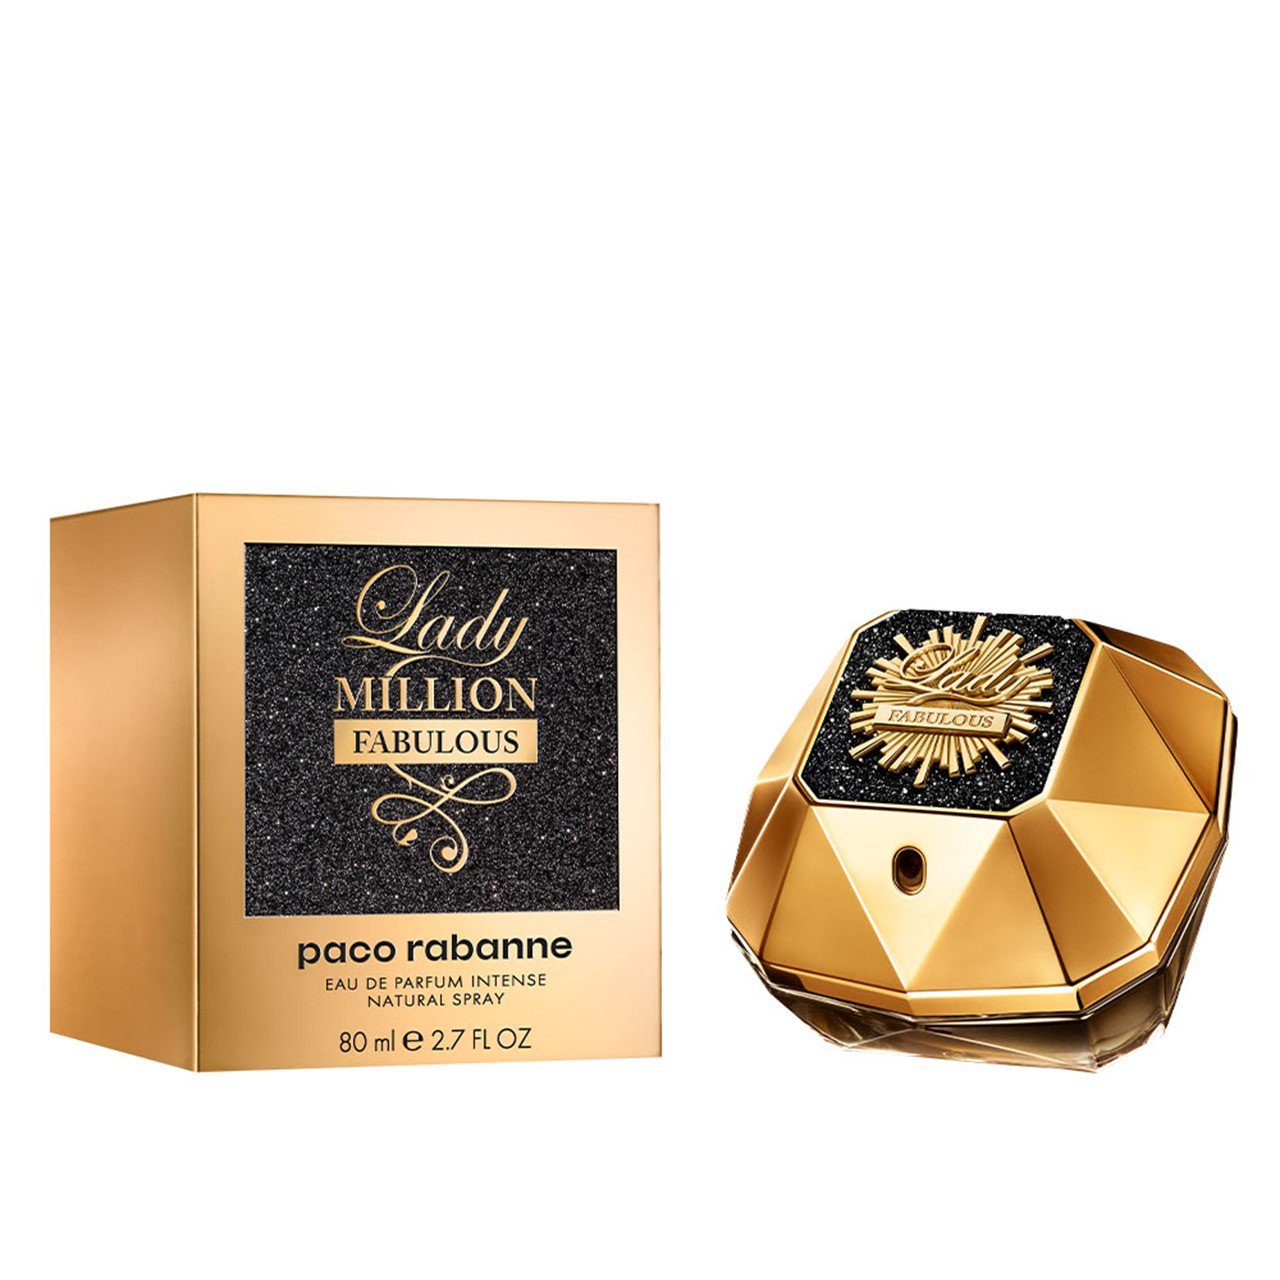 Paco Rabanne Lady Million Fabulous Eau de Parfum Intense 80ml (2.7fl oz)